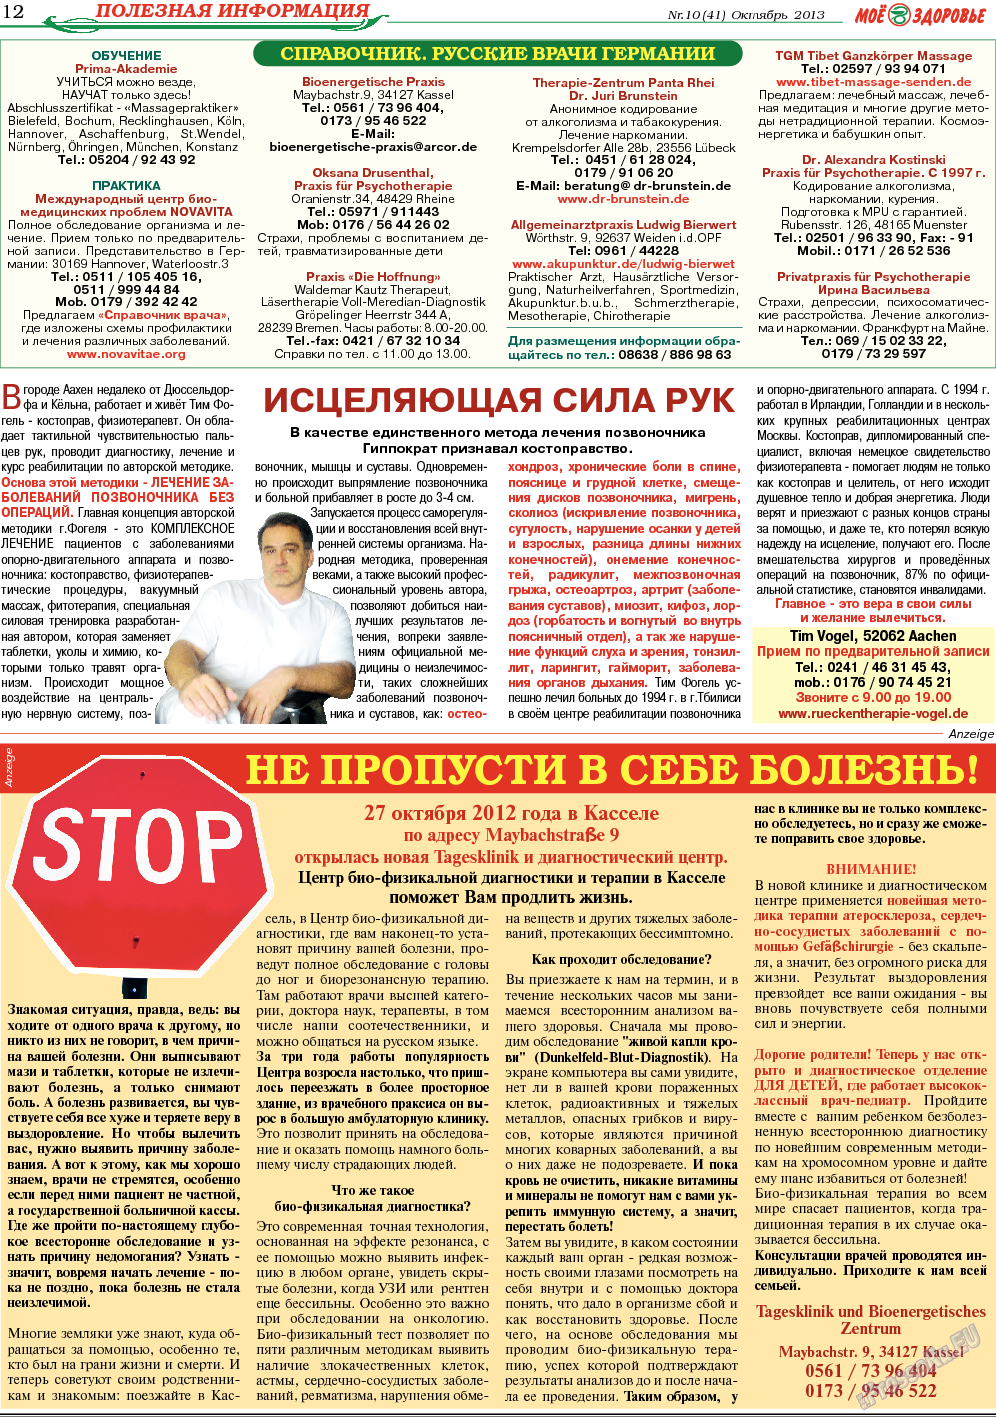 Кругозор, газета. 2013 №10 стр.12